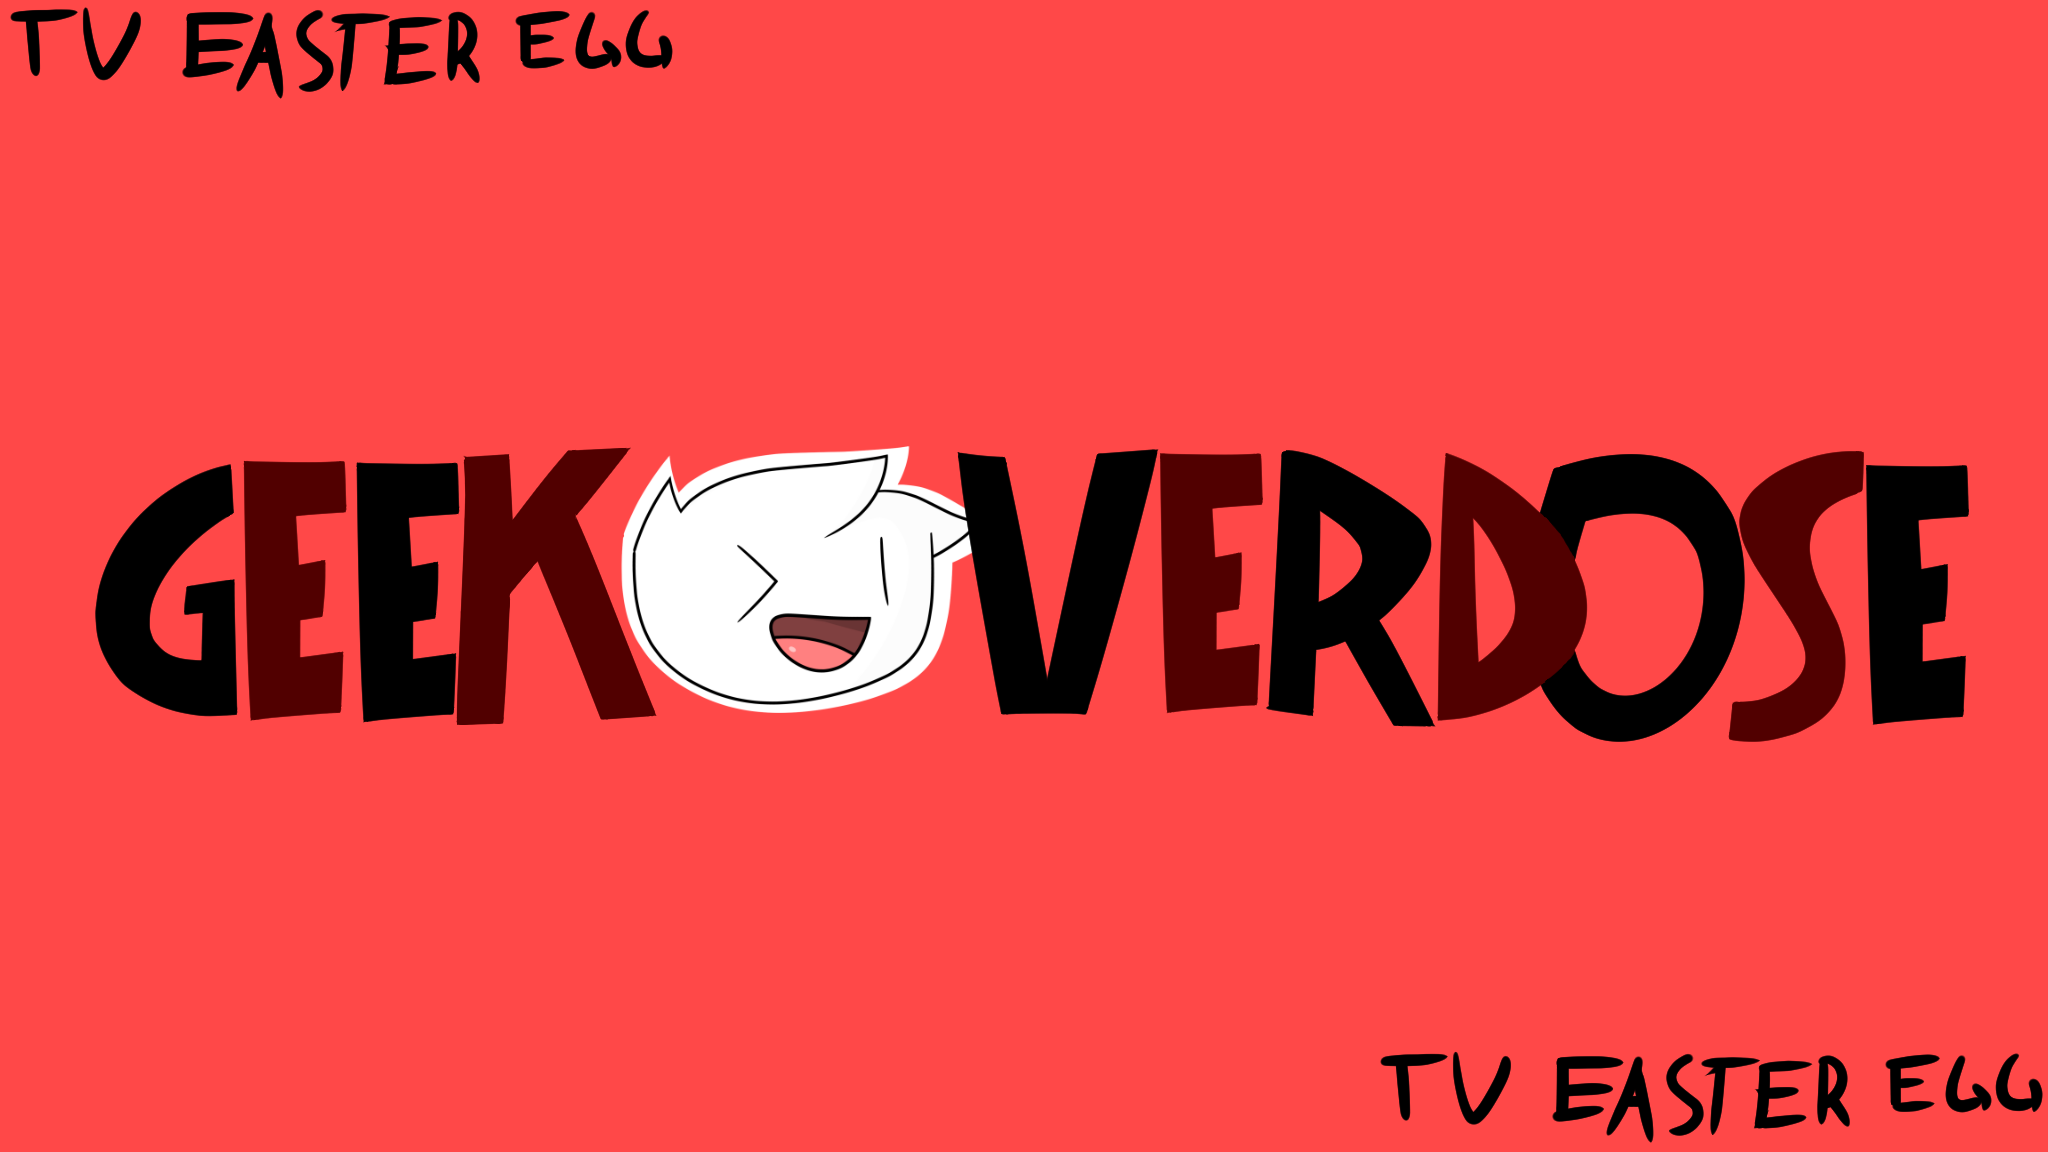 GeekOverdose's cover